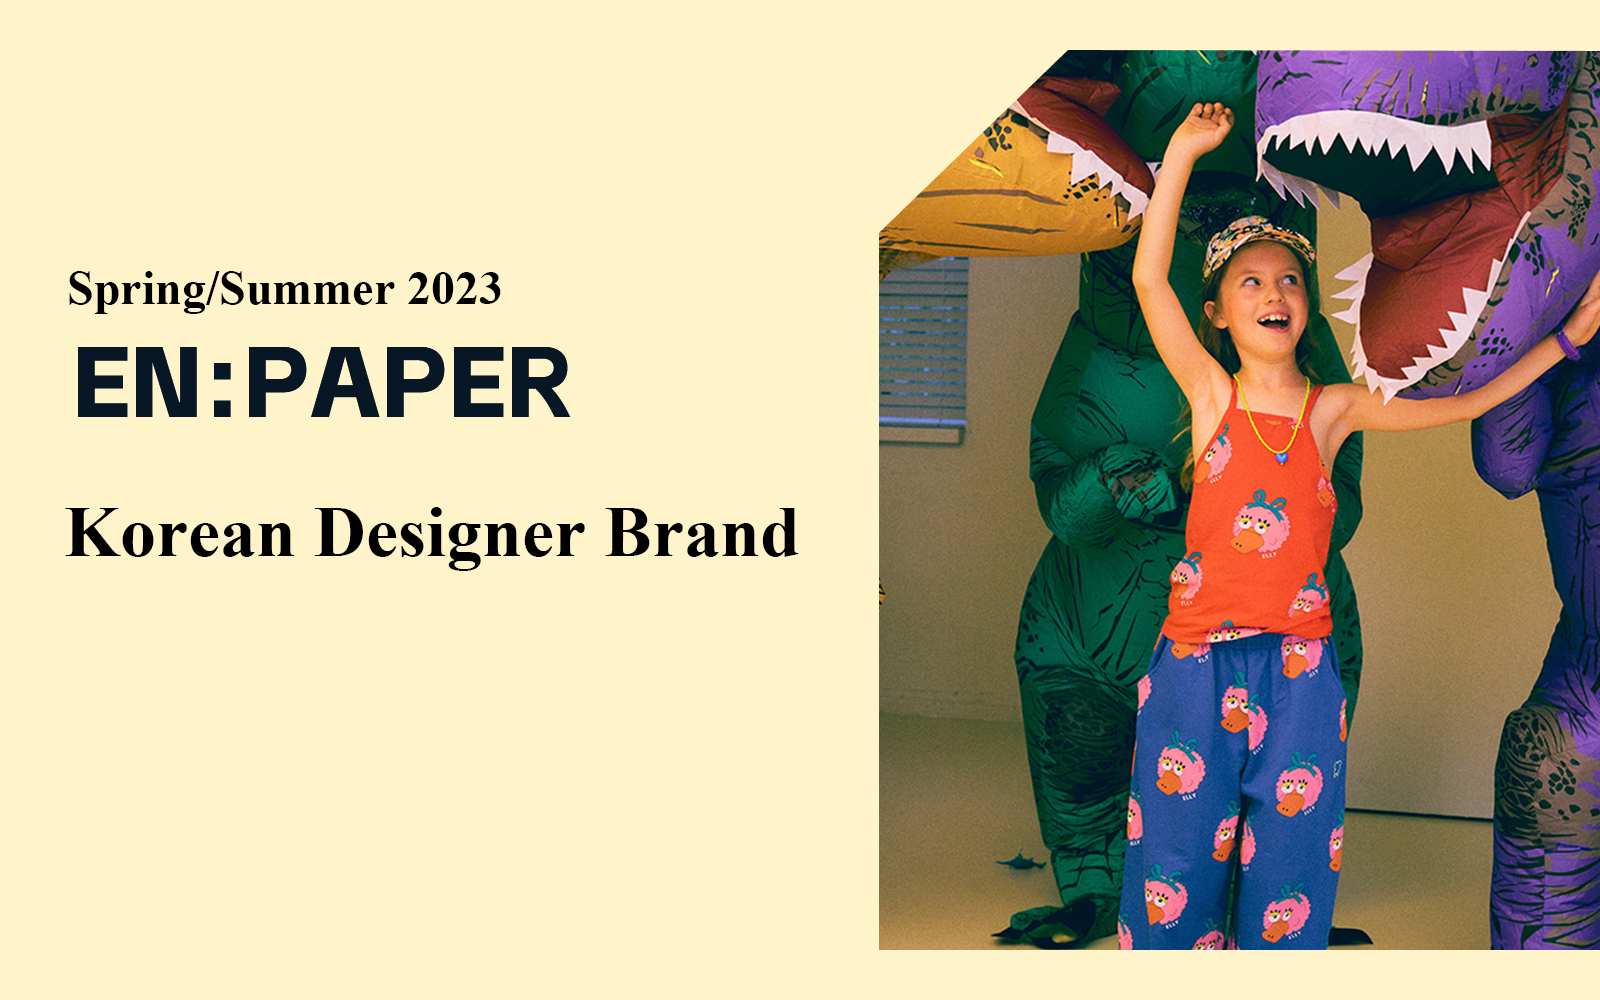 The Analysis of EN:PAPER The Korean Designer Brand